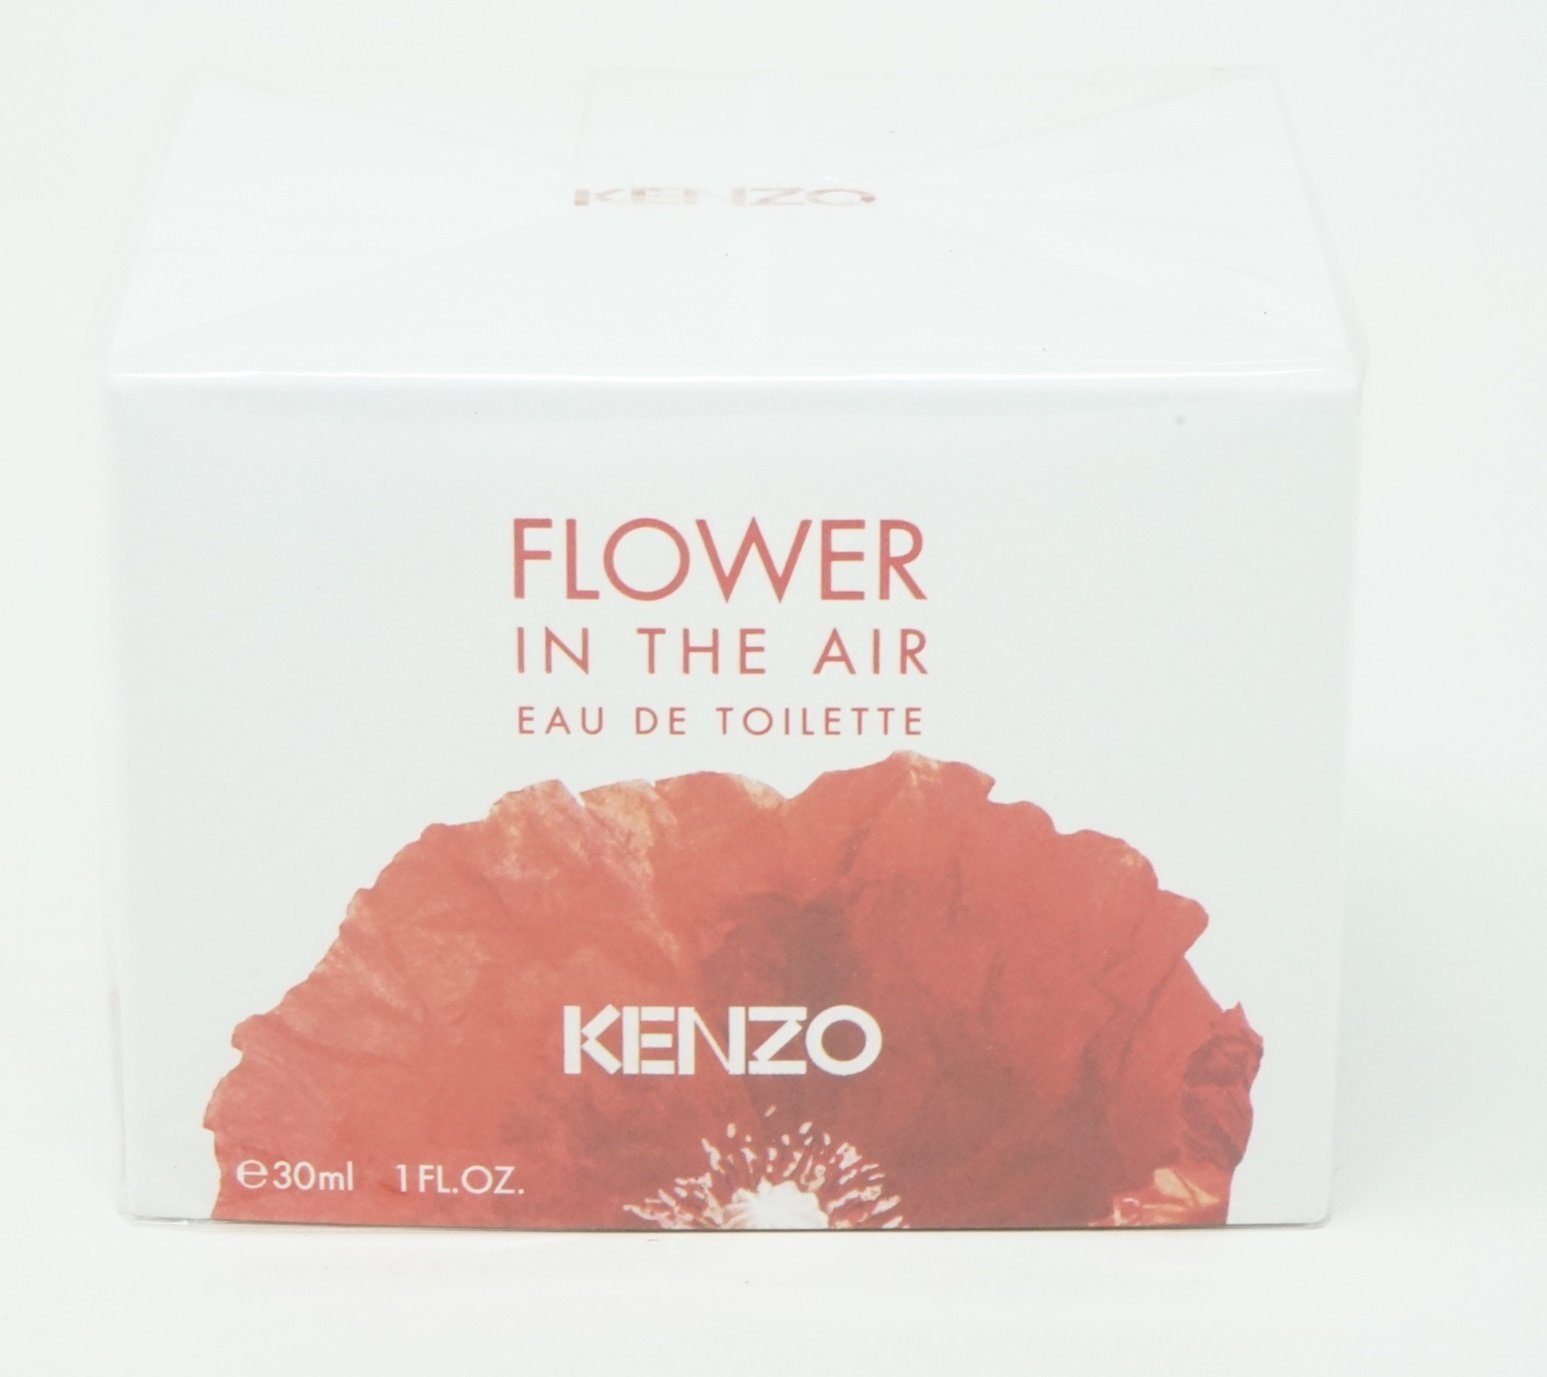 KENZO Eau Eau Toilette Kenzo the Toilette Flower de in 30ml de air